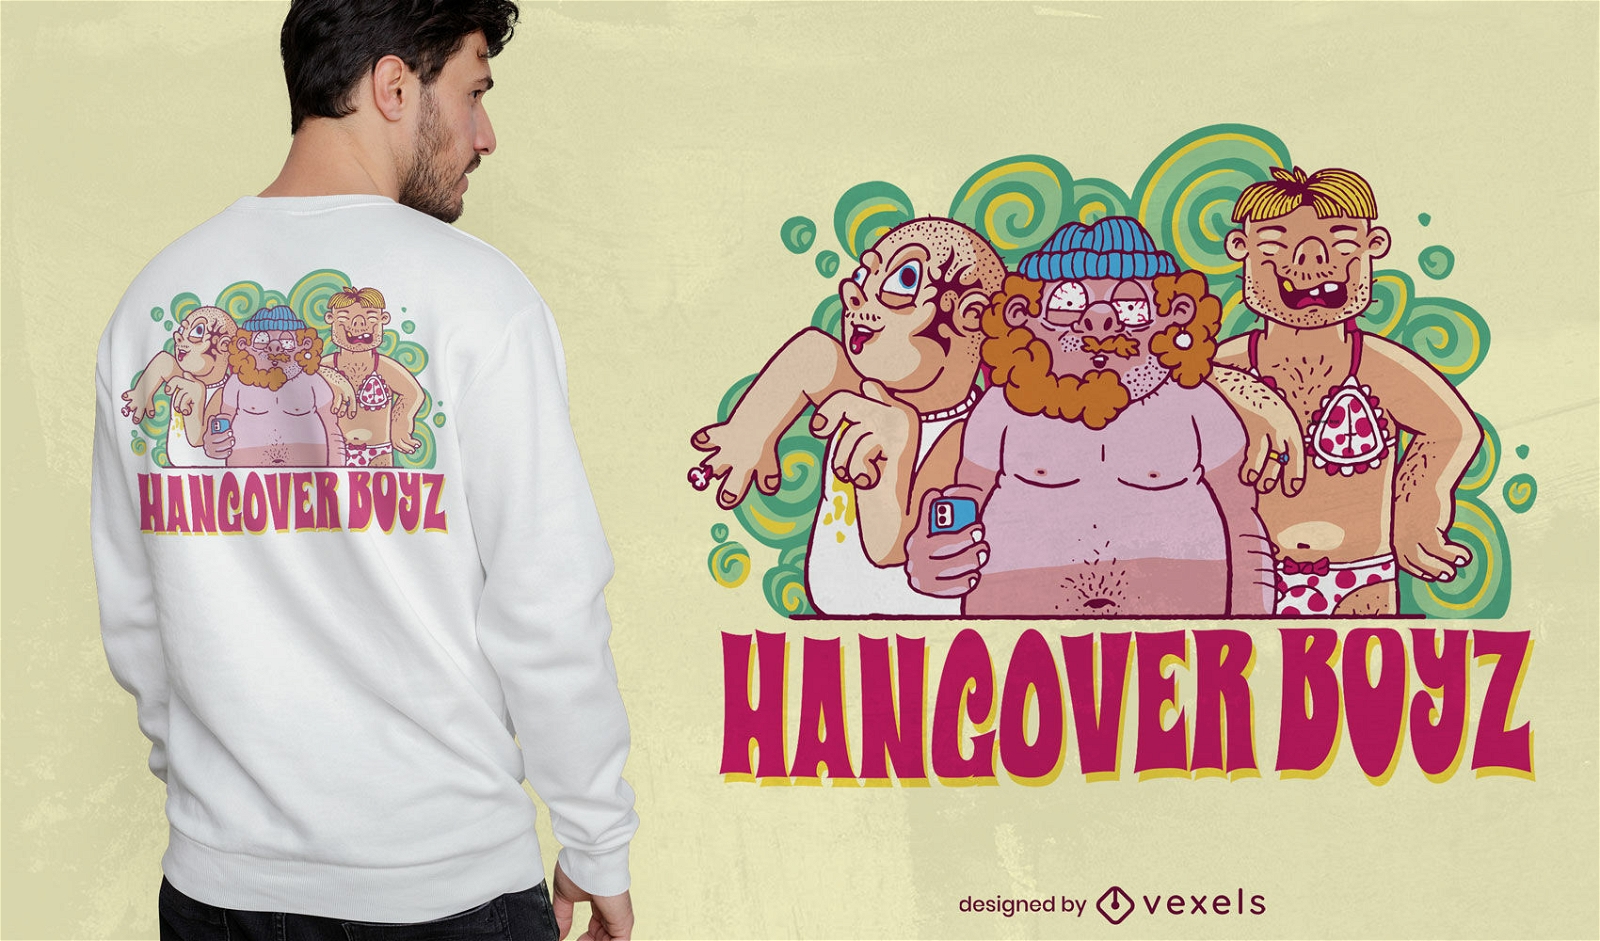 Hangover men with beers t-shirt design